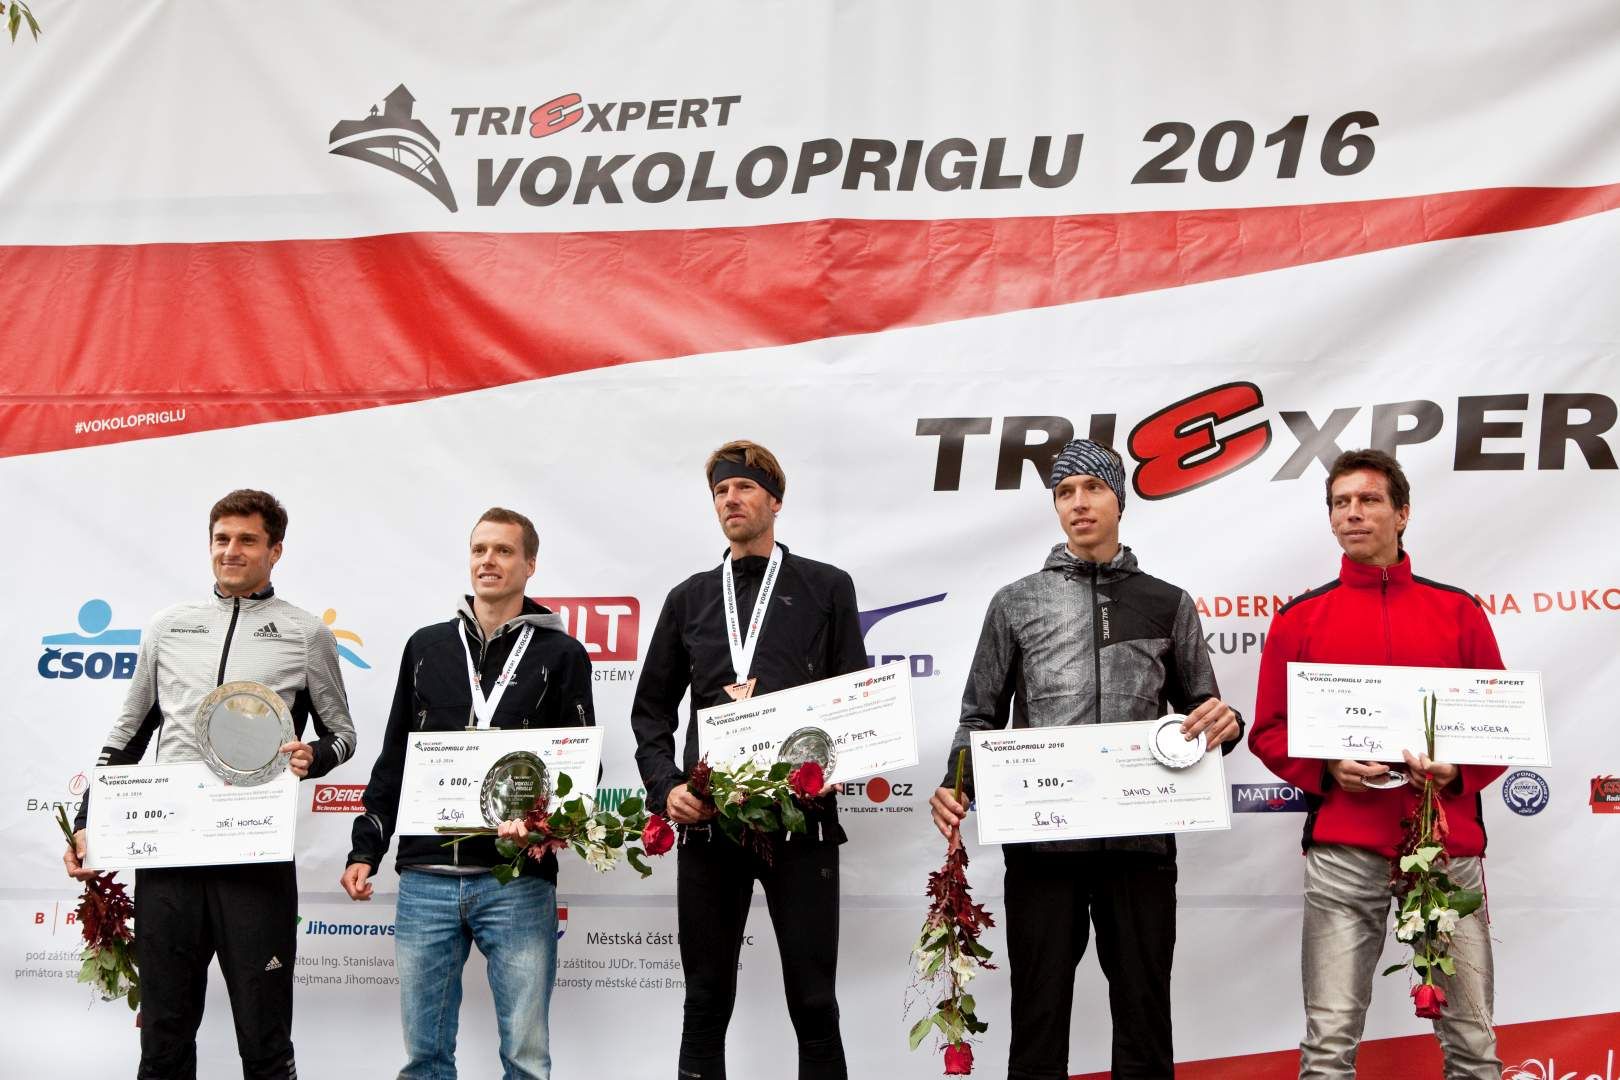 Nejlepších pět mužů TRIEXPERT Vokolo príglu 2016